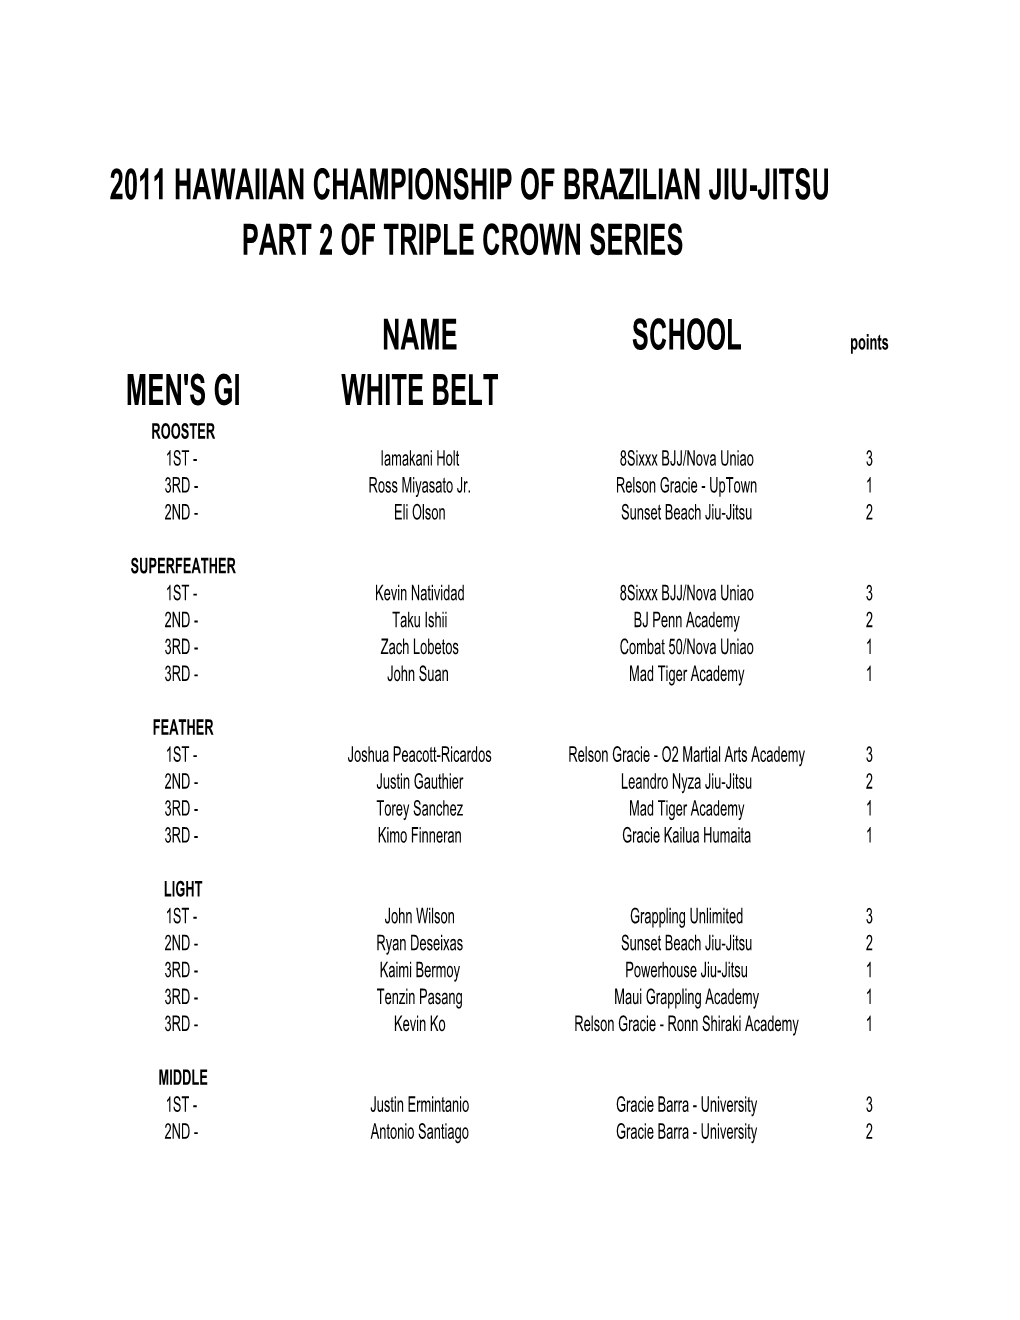 2011 Hawaiian Championship of Brazilian Jiu-Jitsu Part 2 of Triple Crown Series